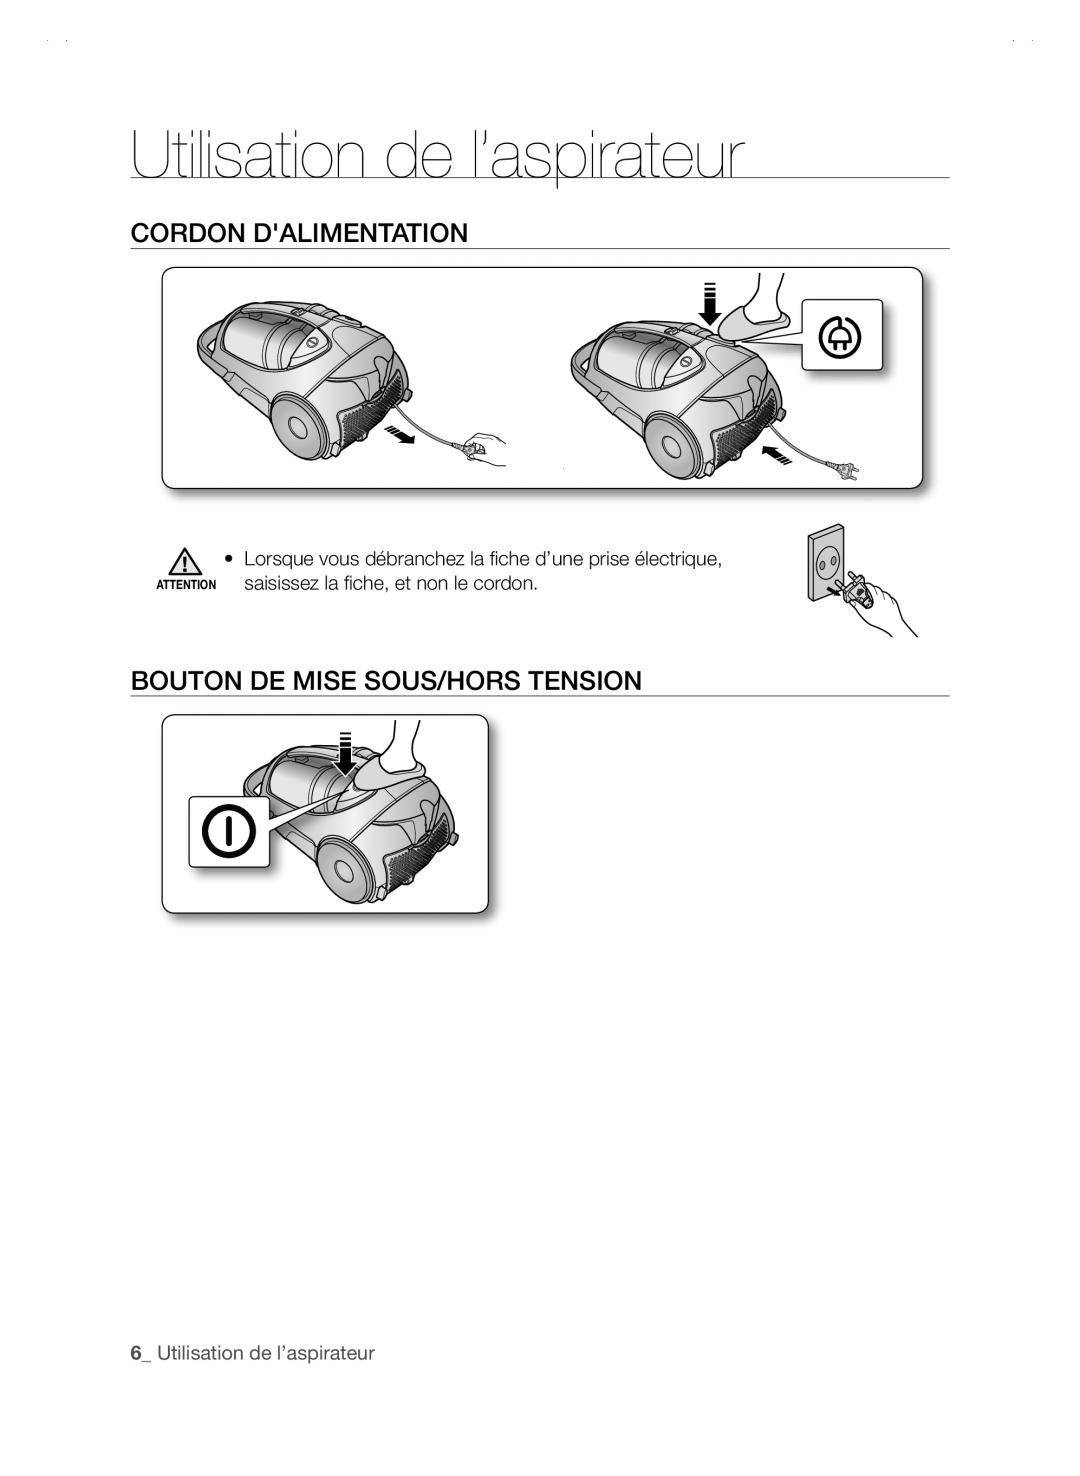 Samsung SC88P user manual Utilisation de l’aspirateur, Cordon Dalimentation, bouton de mise sous/hors tension 